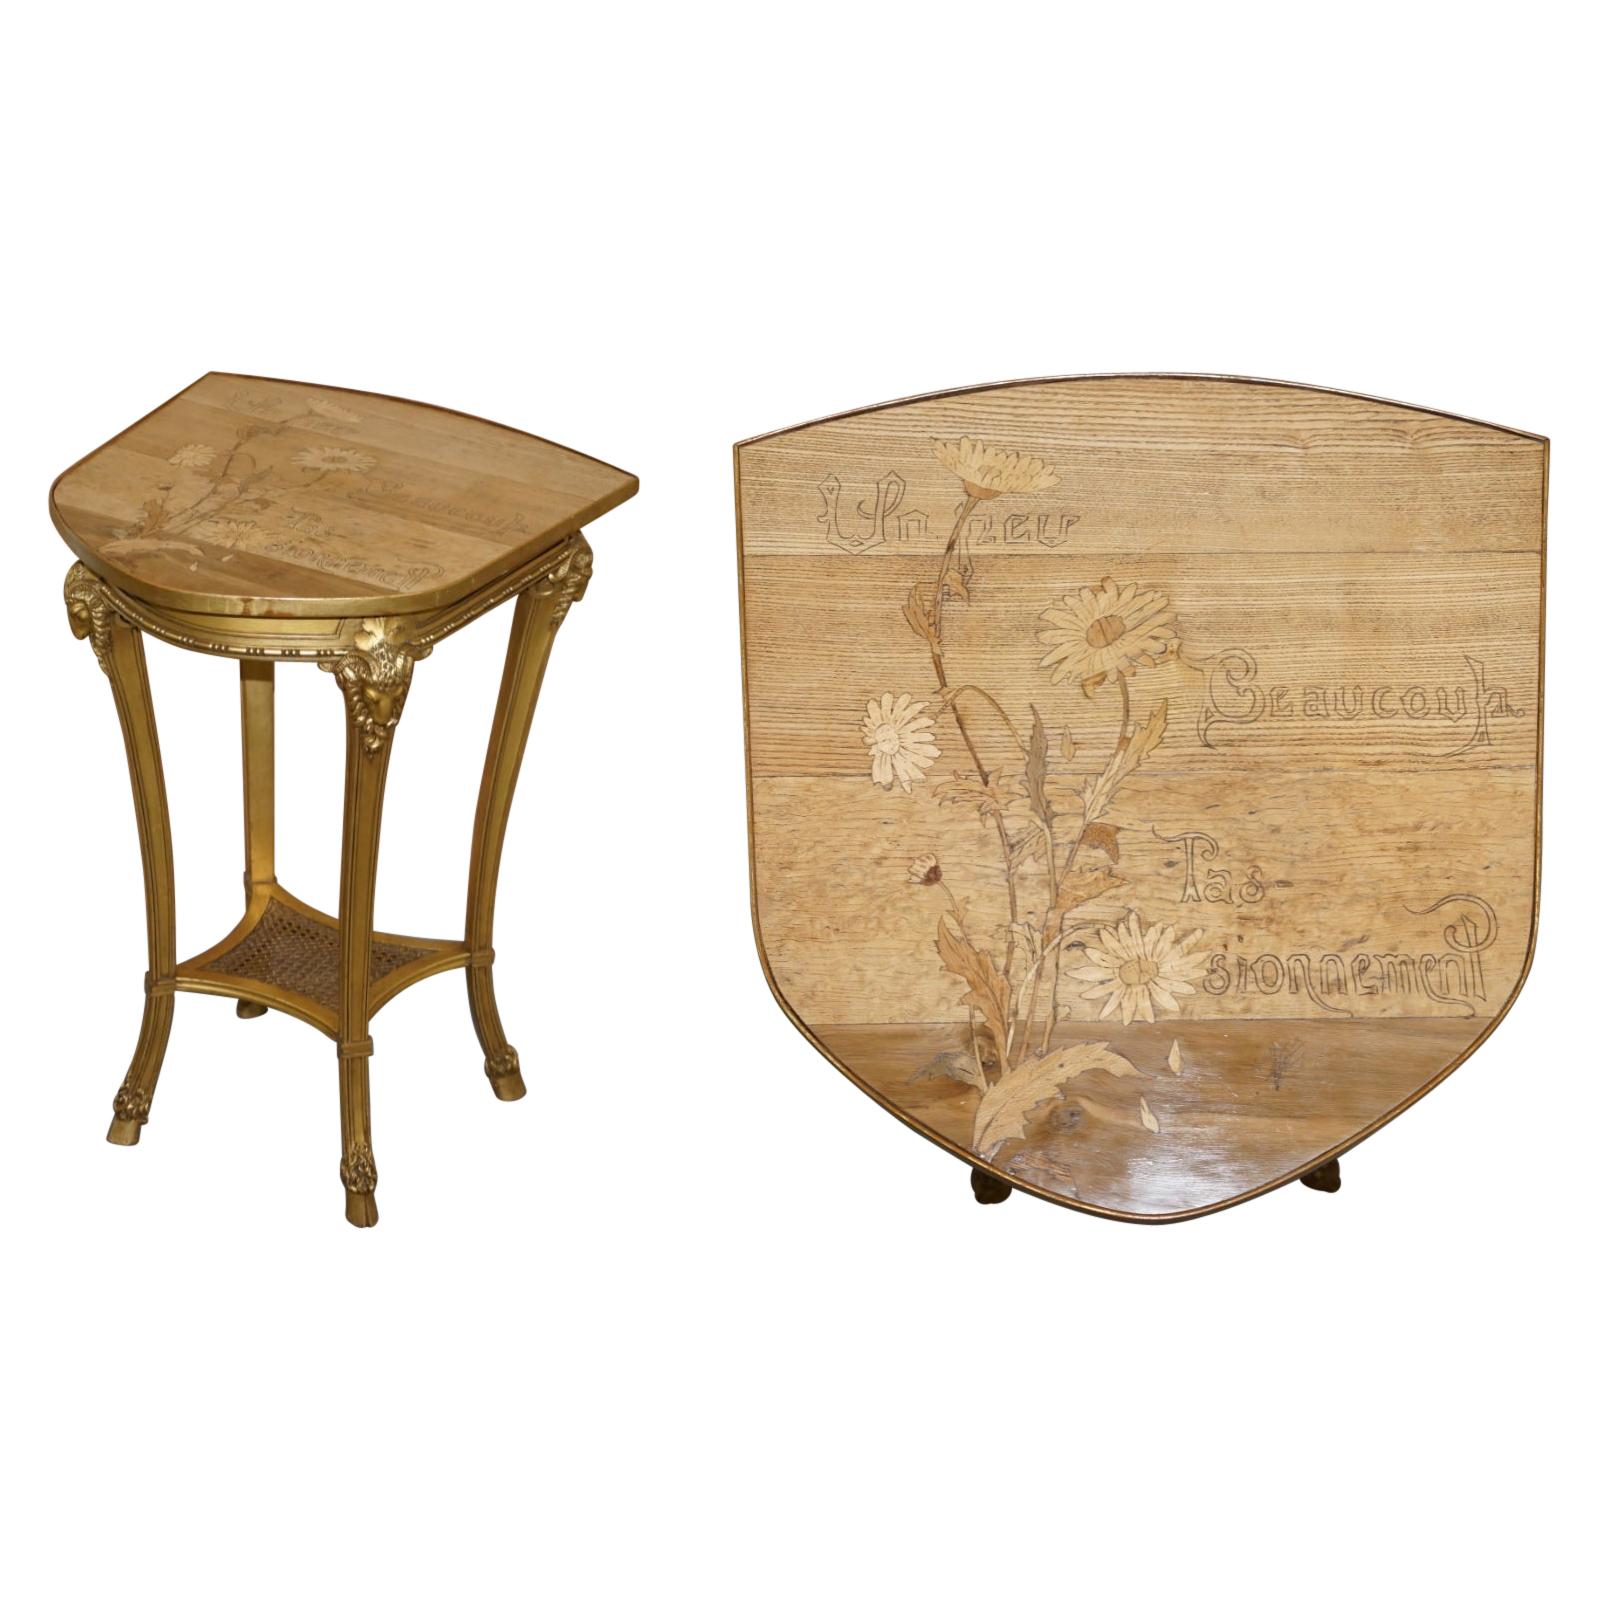 Very Rare Emile Galle Romantic Specimen Wood Table Un Peu Beaucoup Passionnement For Sale